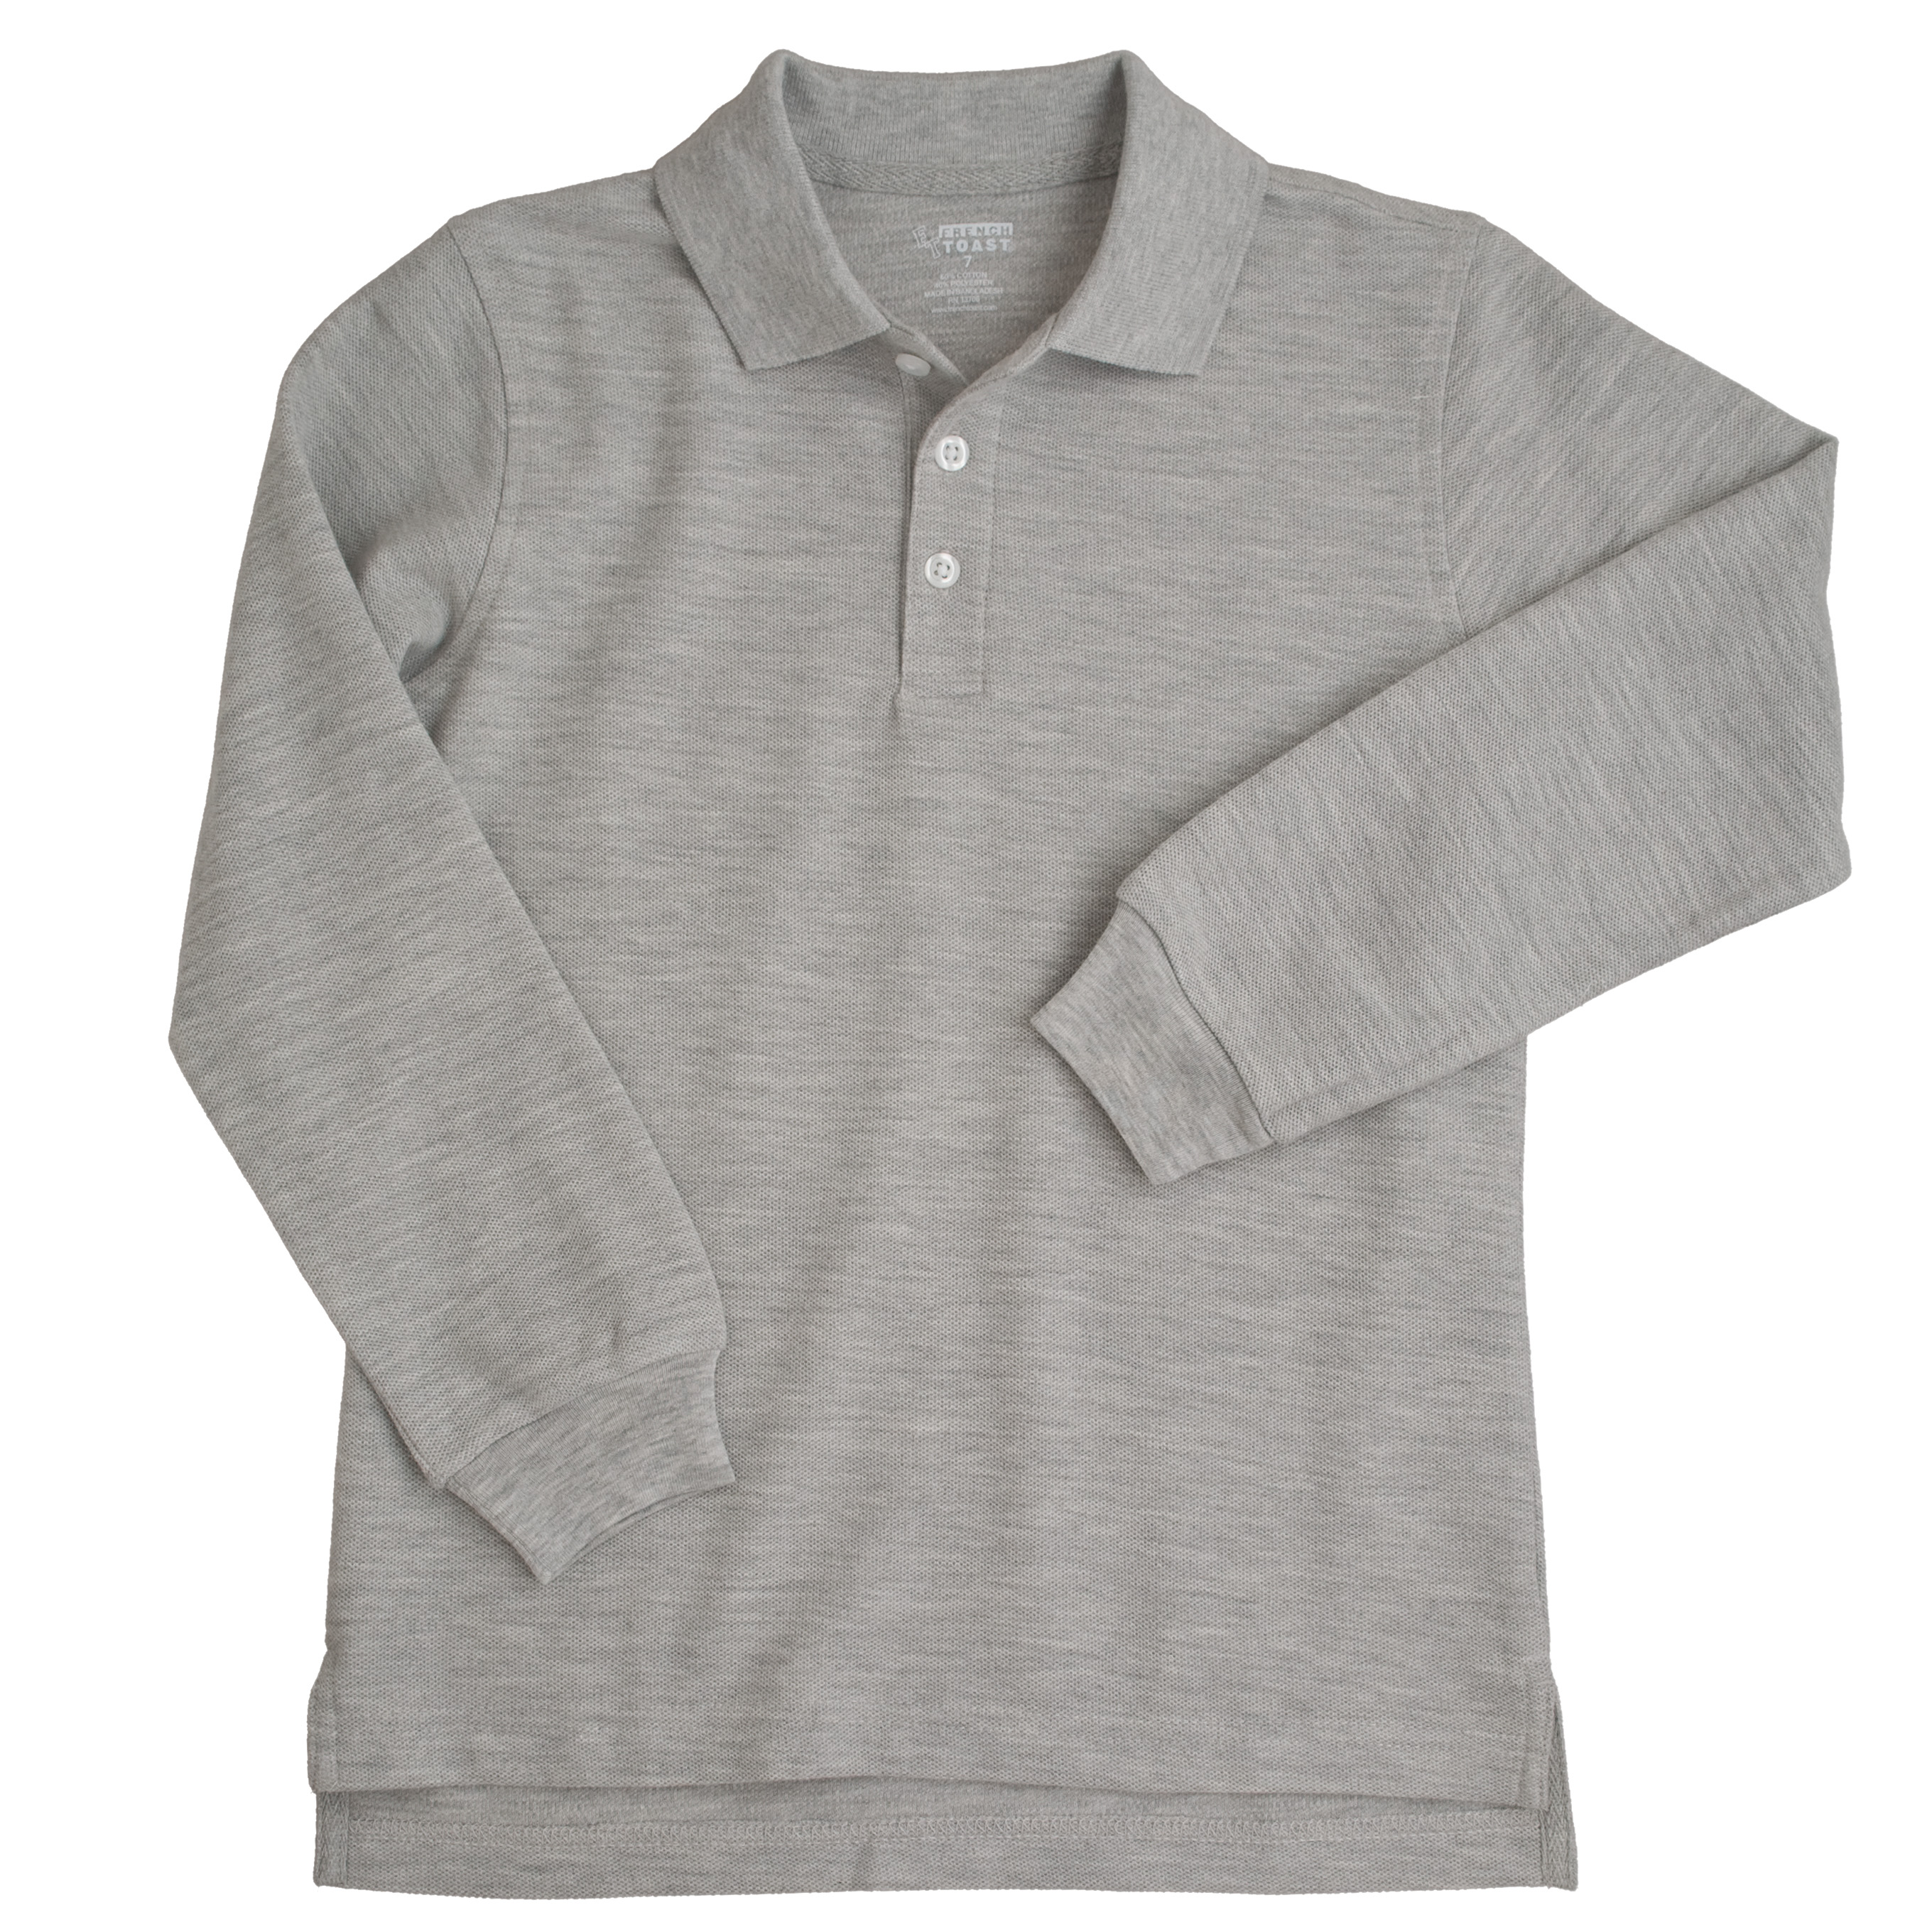 Unisex Short Sleeve Pique Polo Shirt